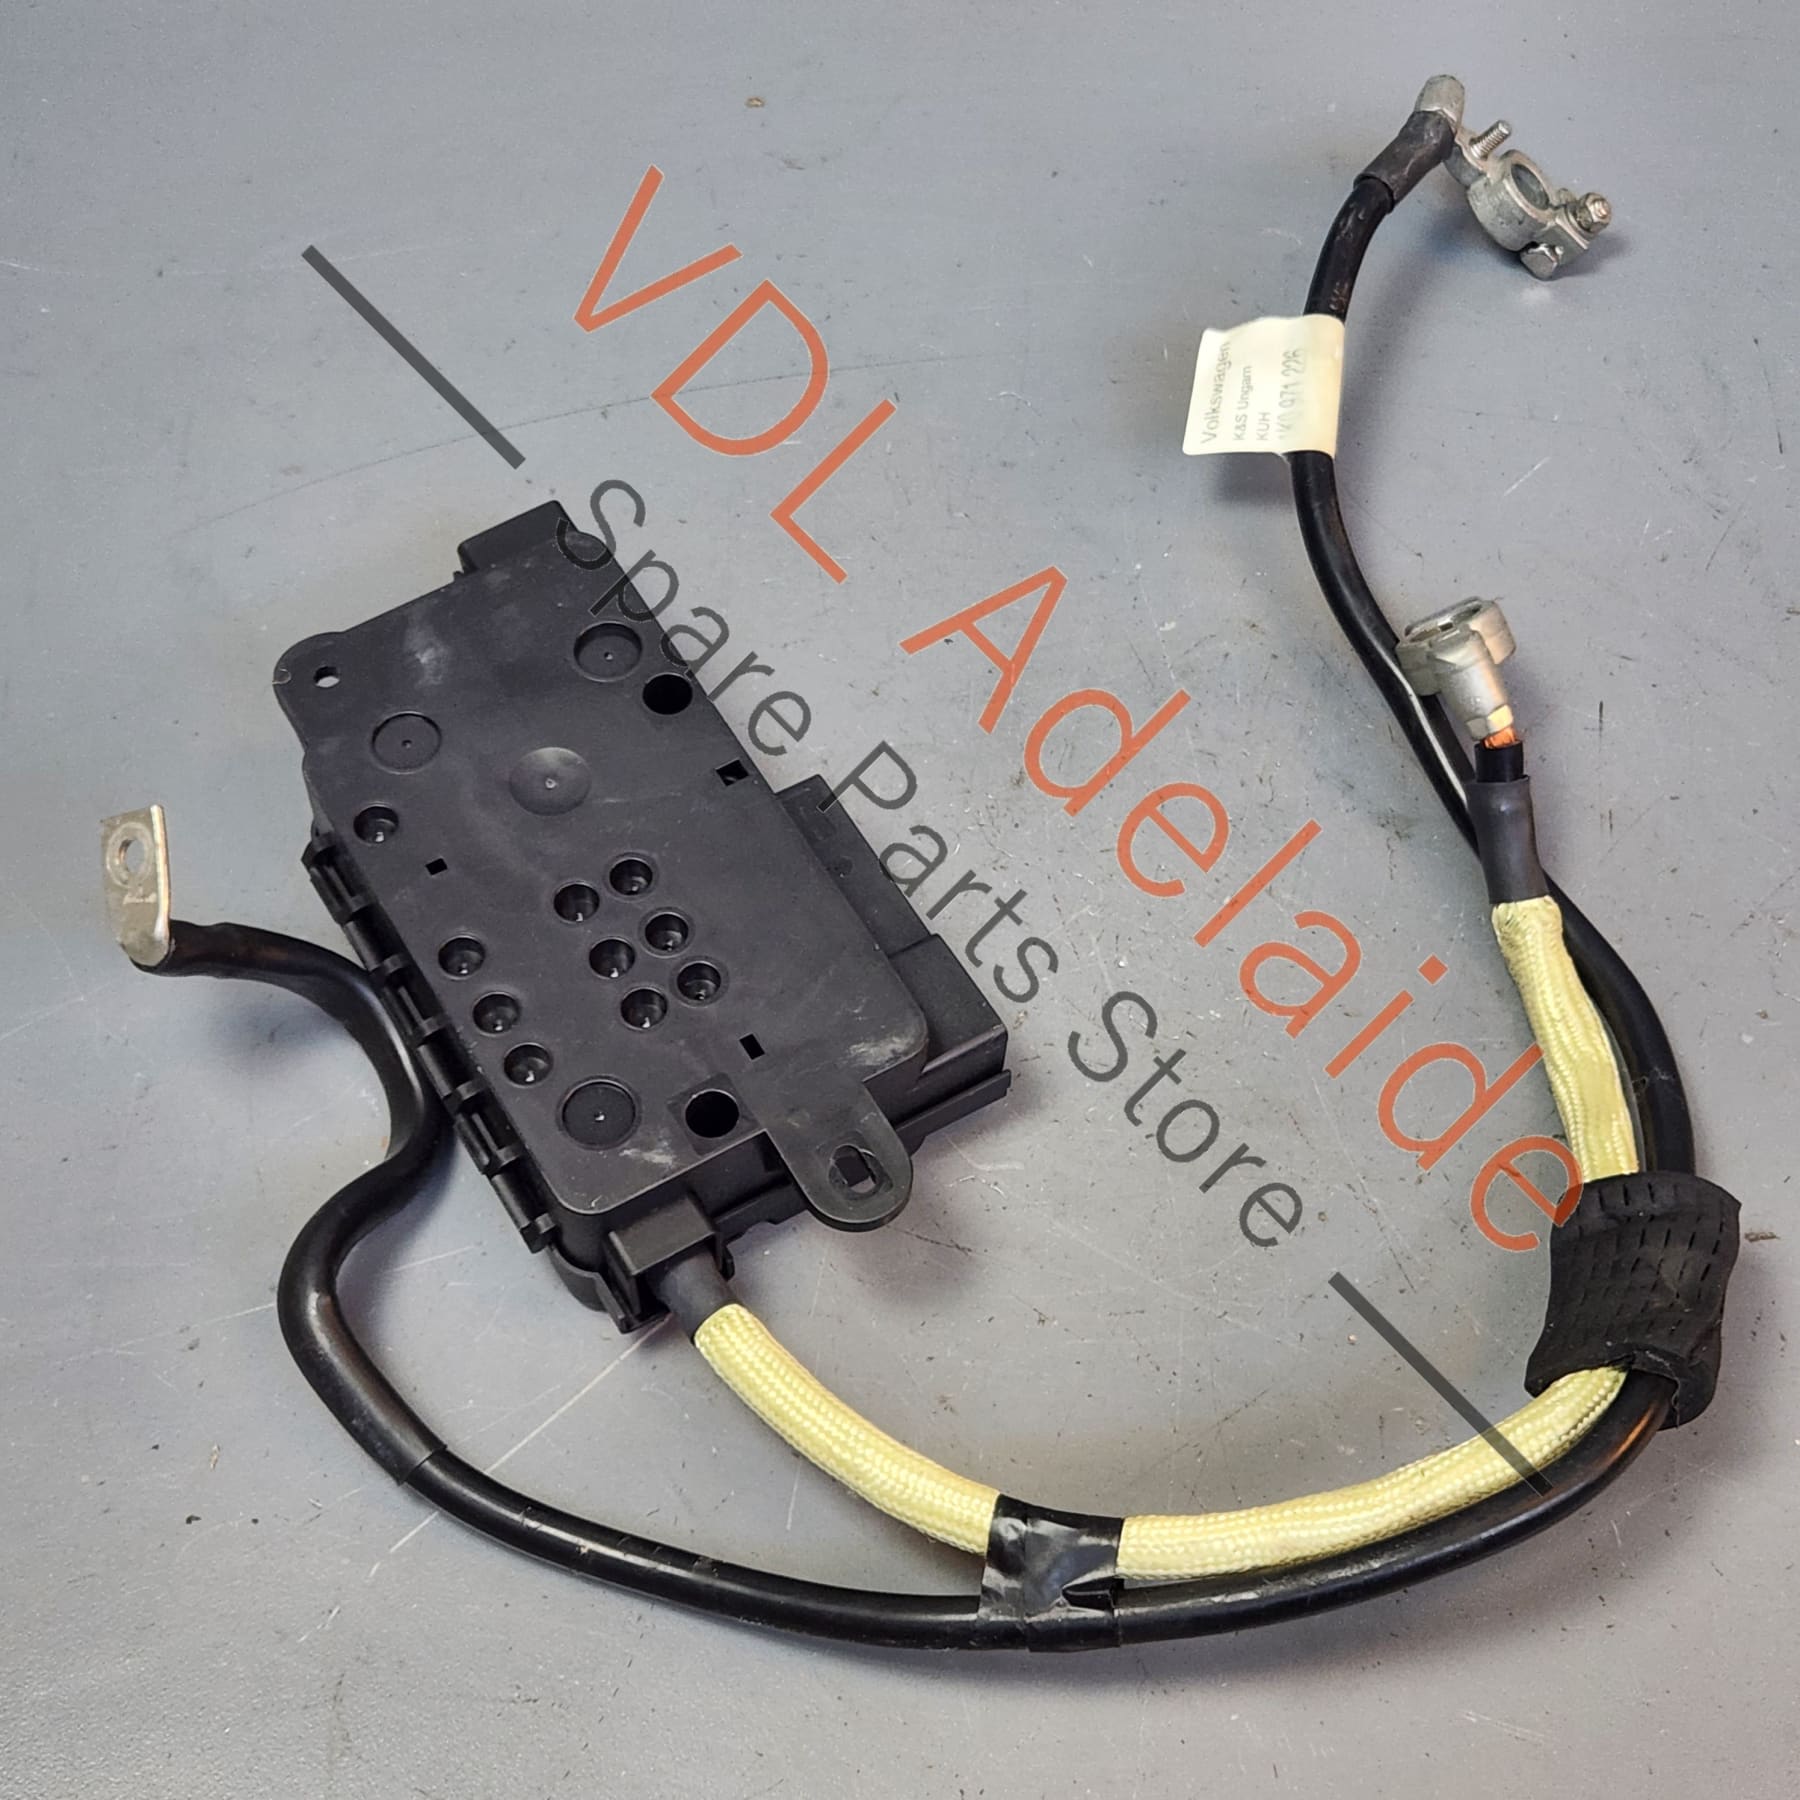 1K0971225 1K0971226   VW Golf R32 MK5 Battery + 12V Lead  Wire Cable 1K0971225 / 1K0971226